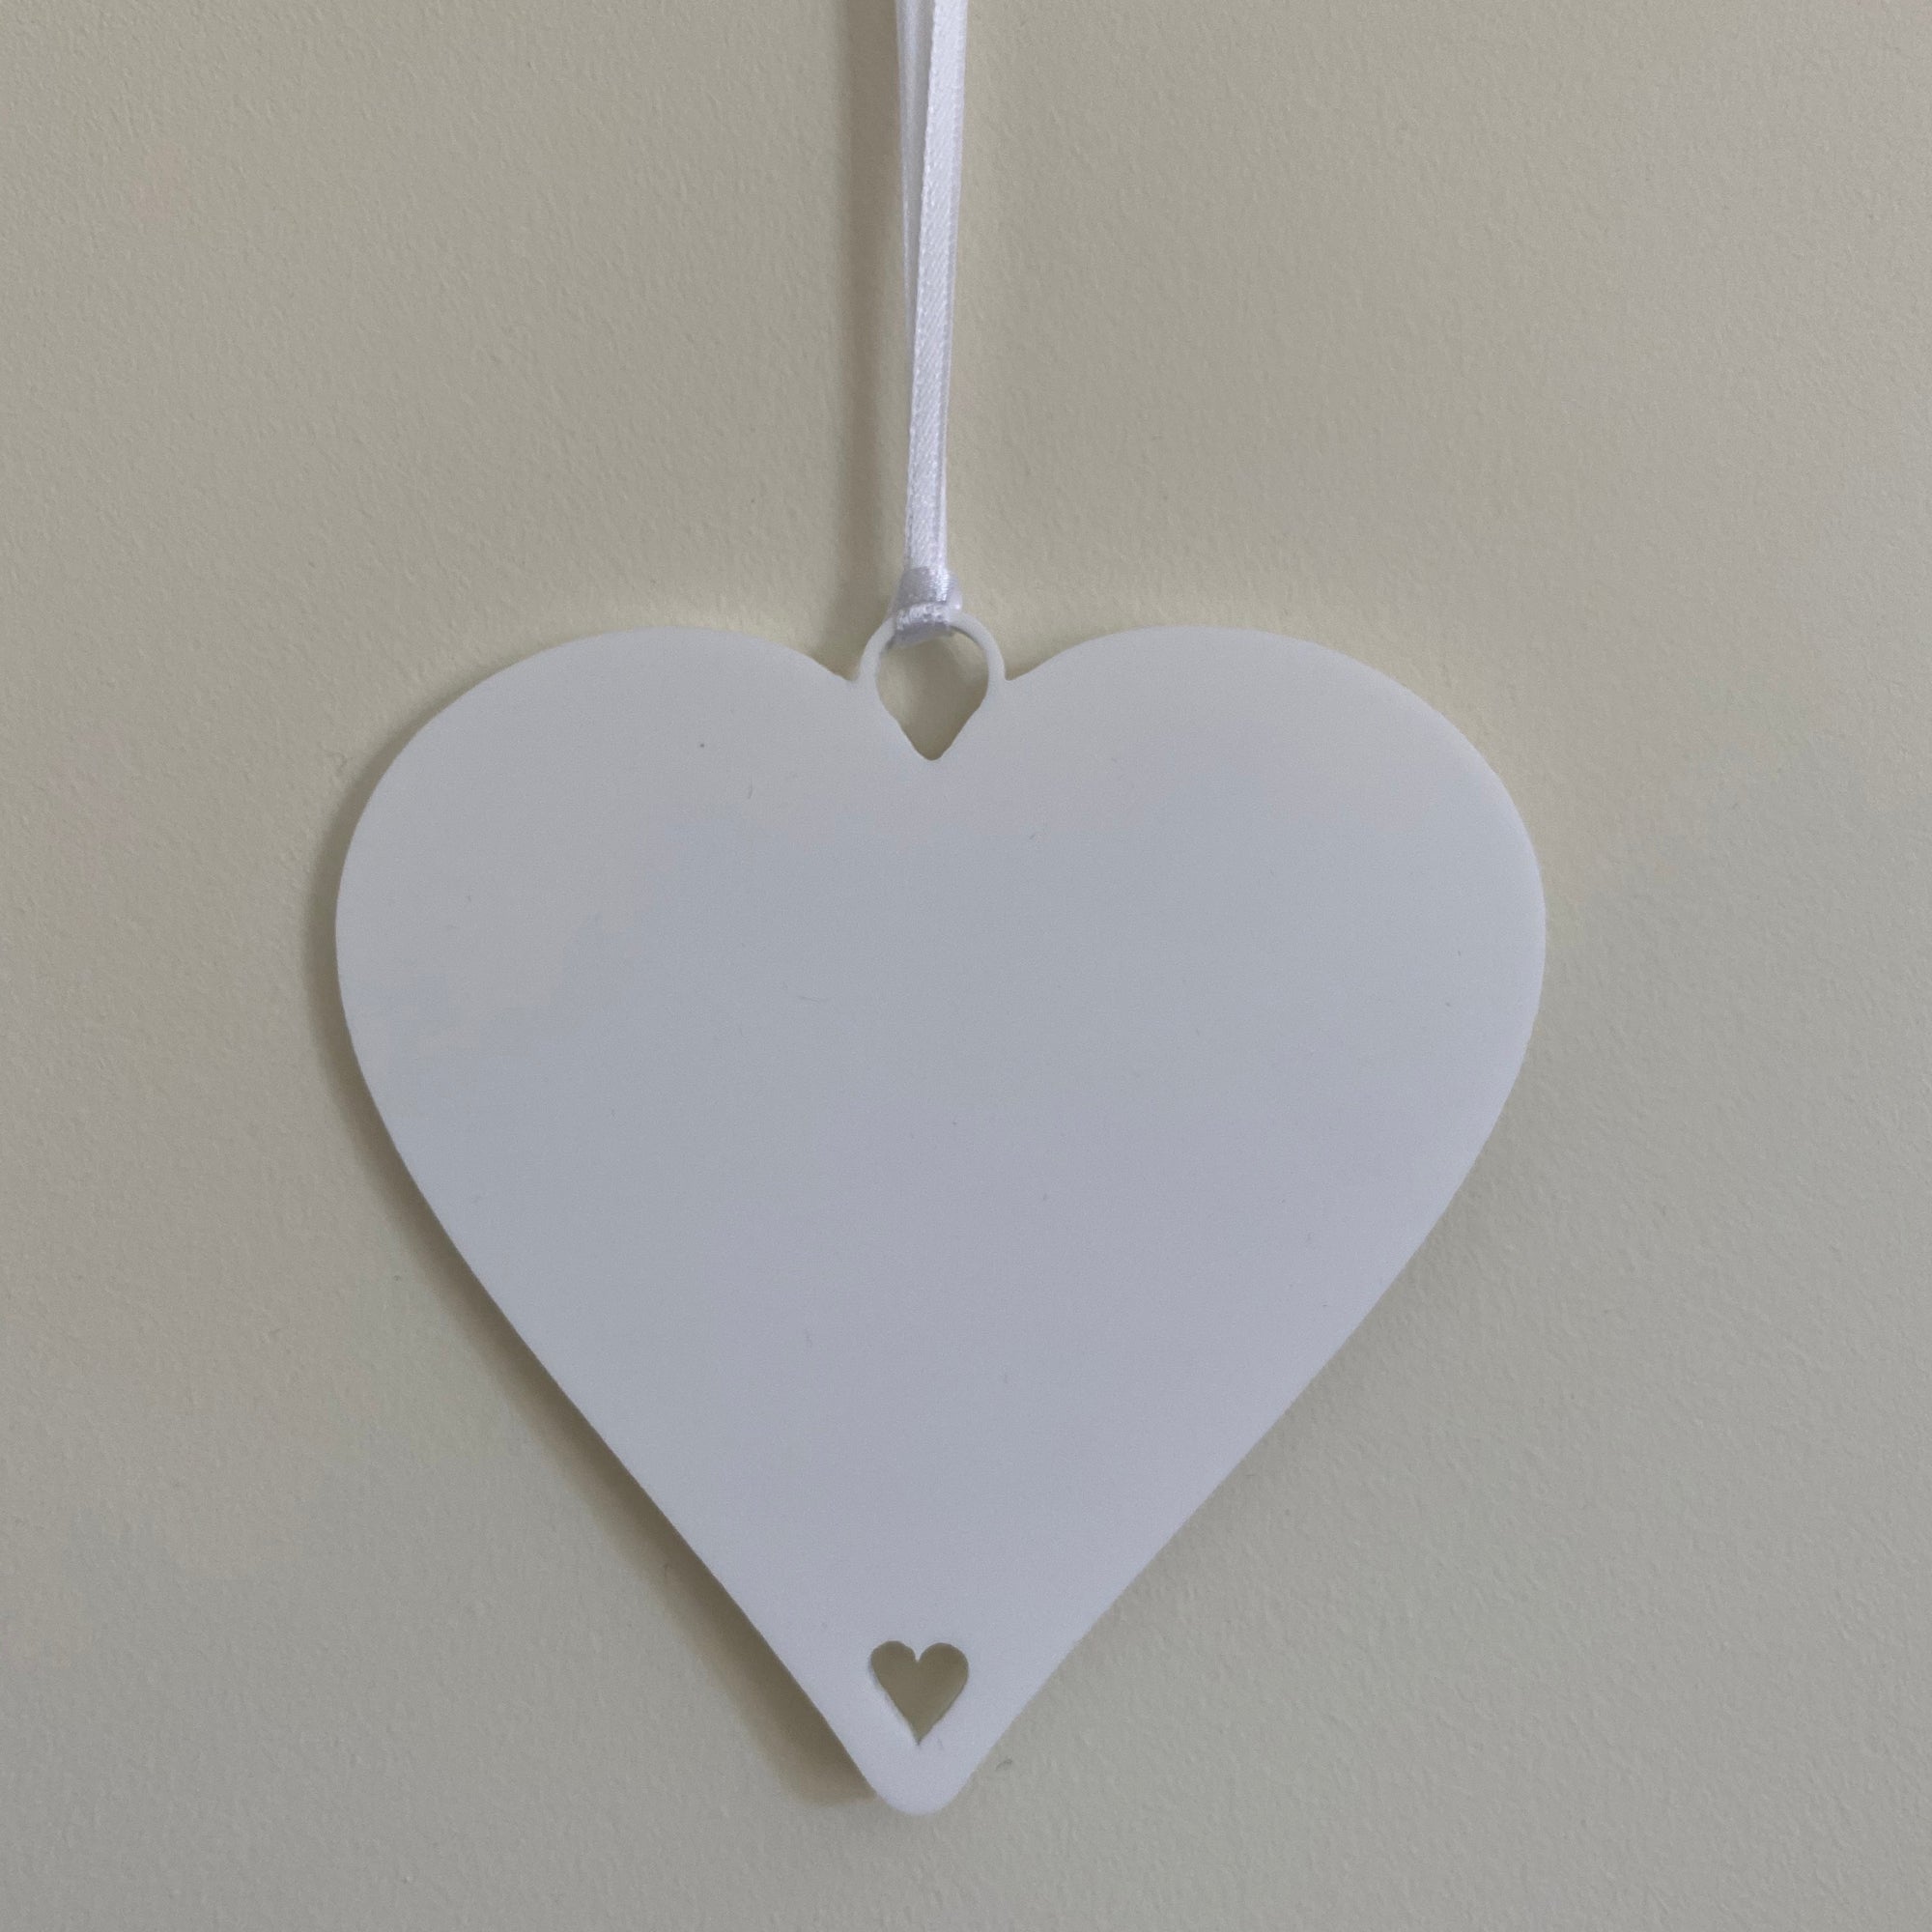 Personalised Couples Name Gift - Cute Hedgehogs Hanging Keepsake - 10cm Heart